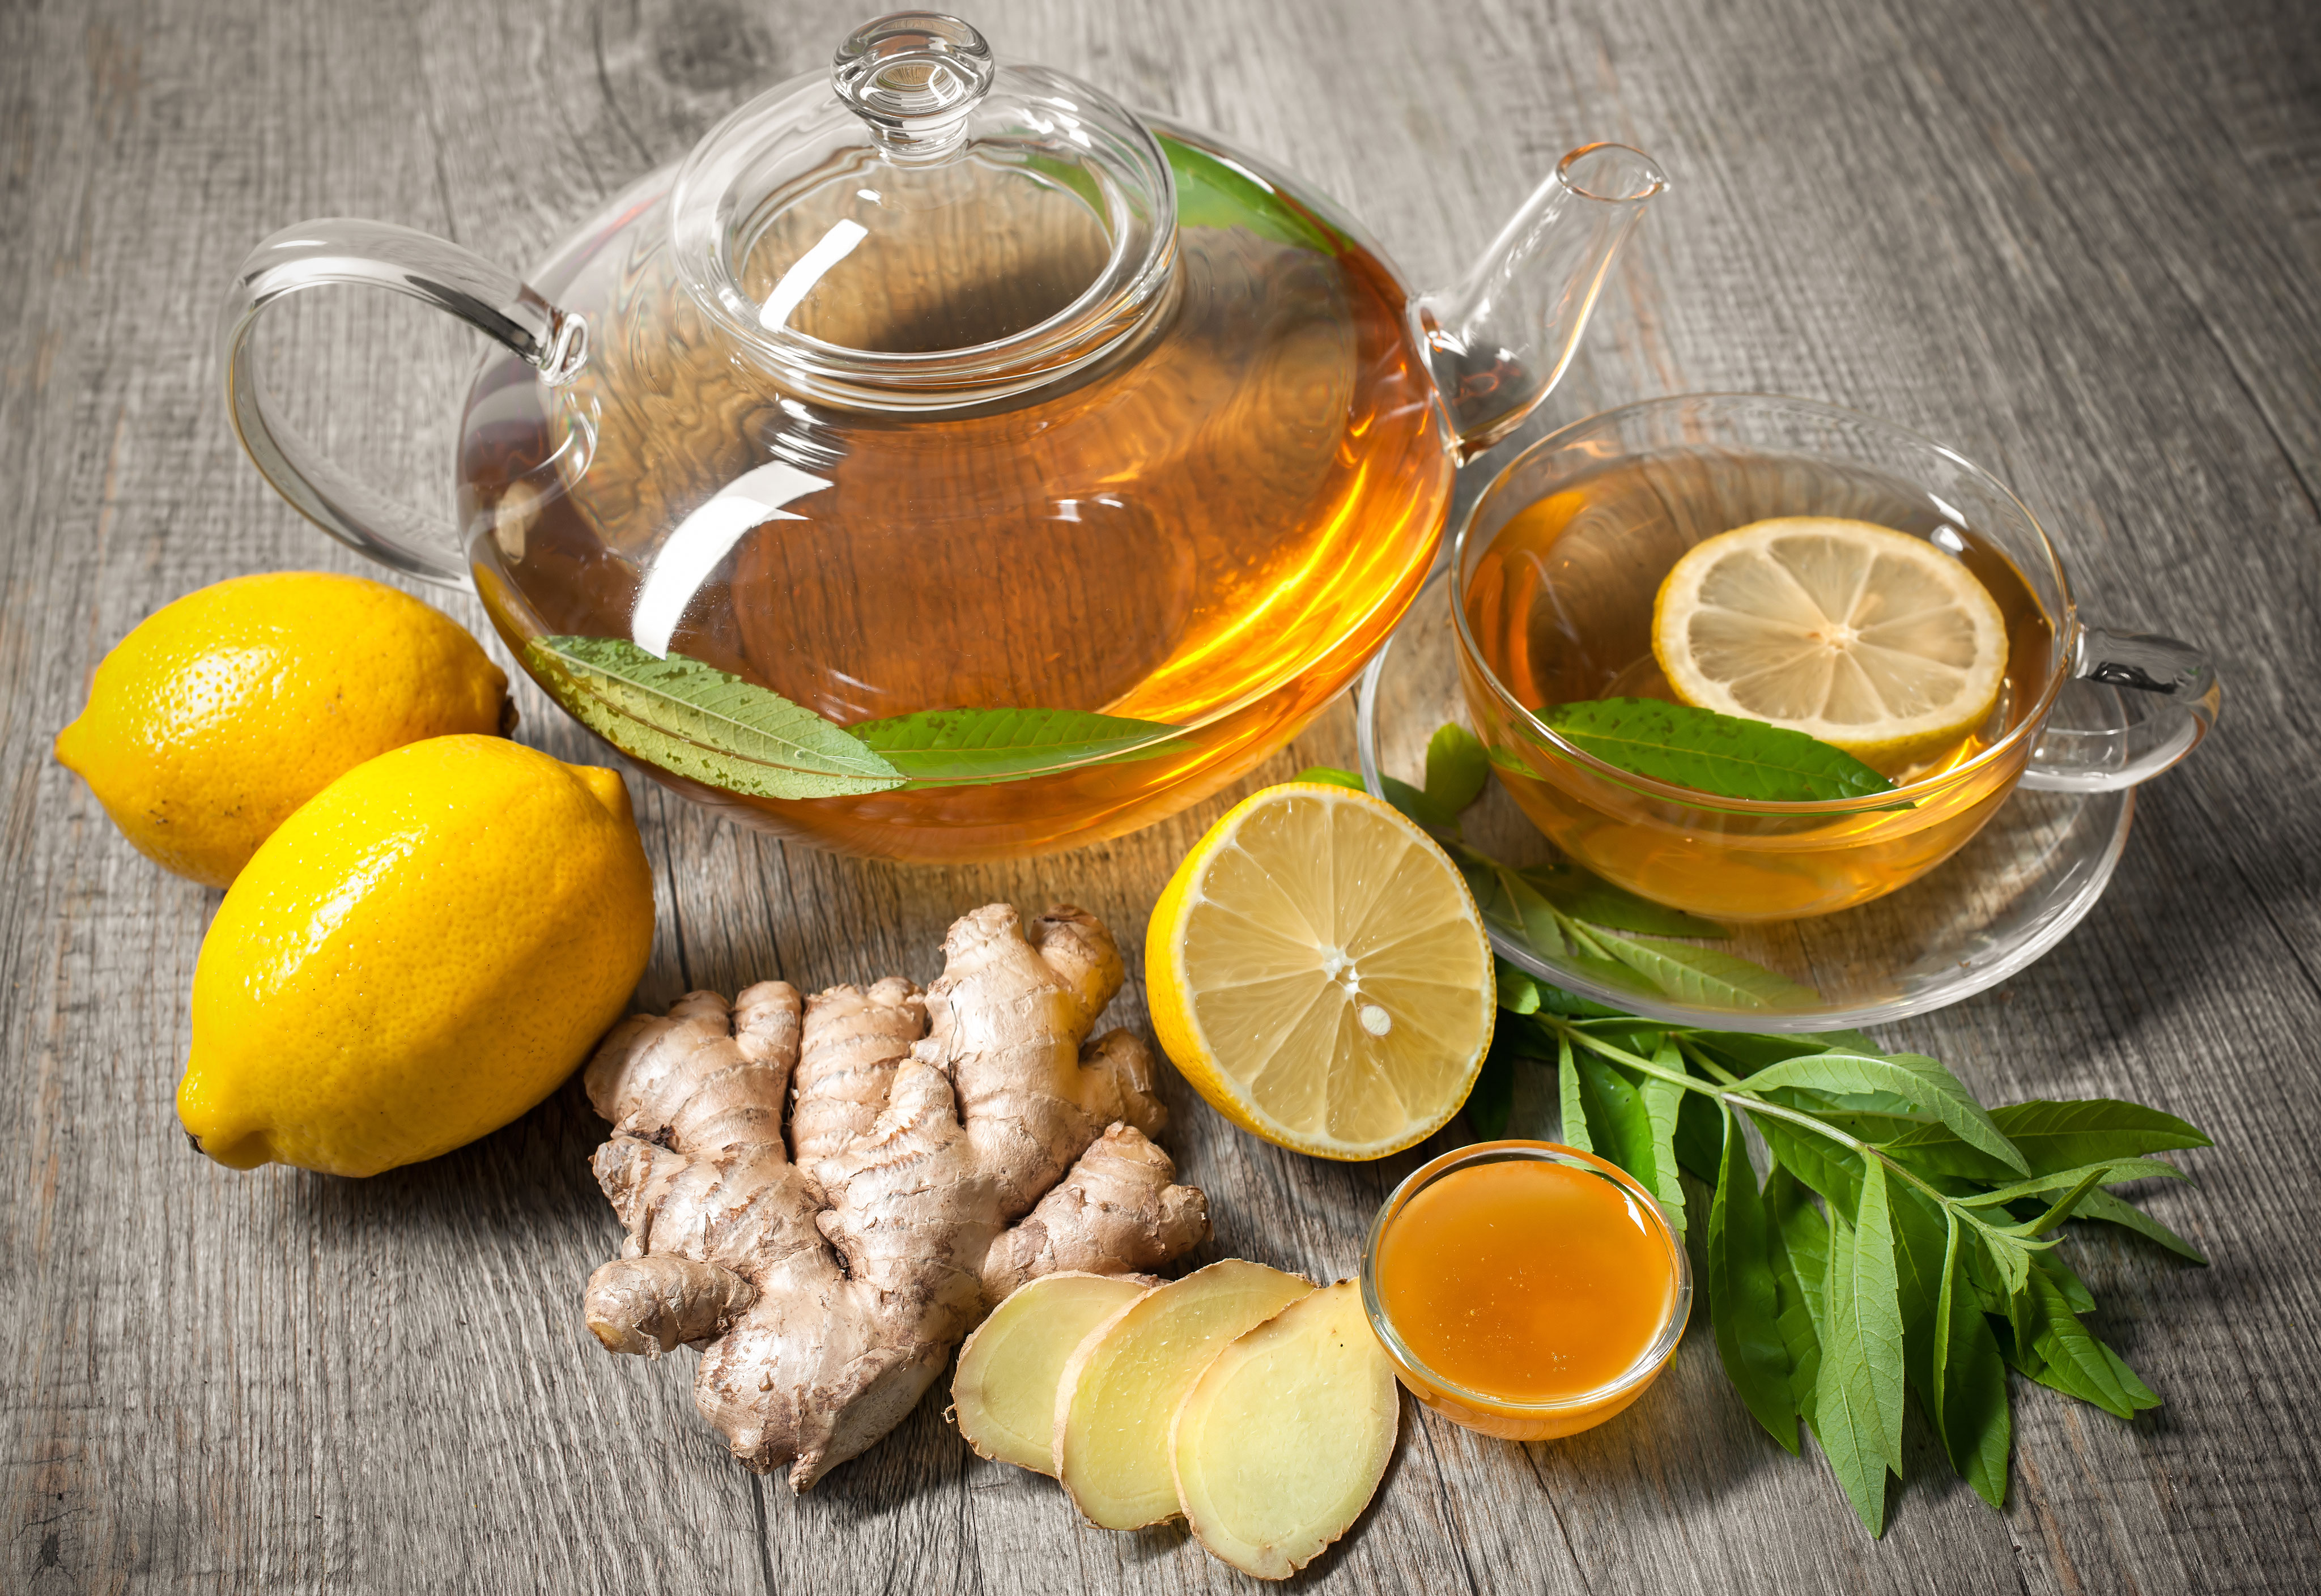 Мед похудение пить. Чай имбирь лимон мед зеленый чай. Имбирный чай. Чай с лимоном и медом. Чай с лимоном и имбирем.